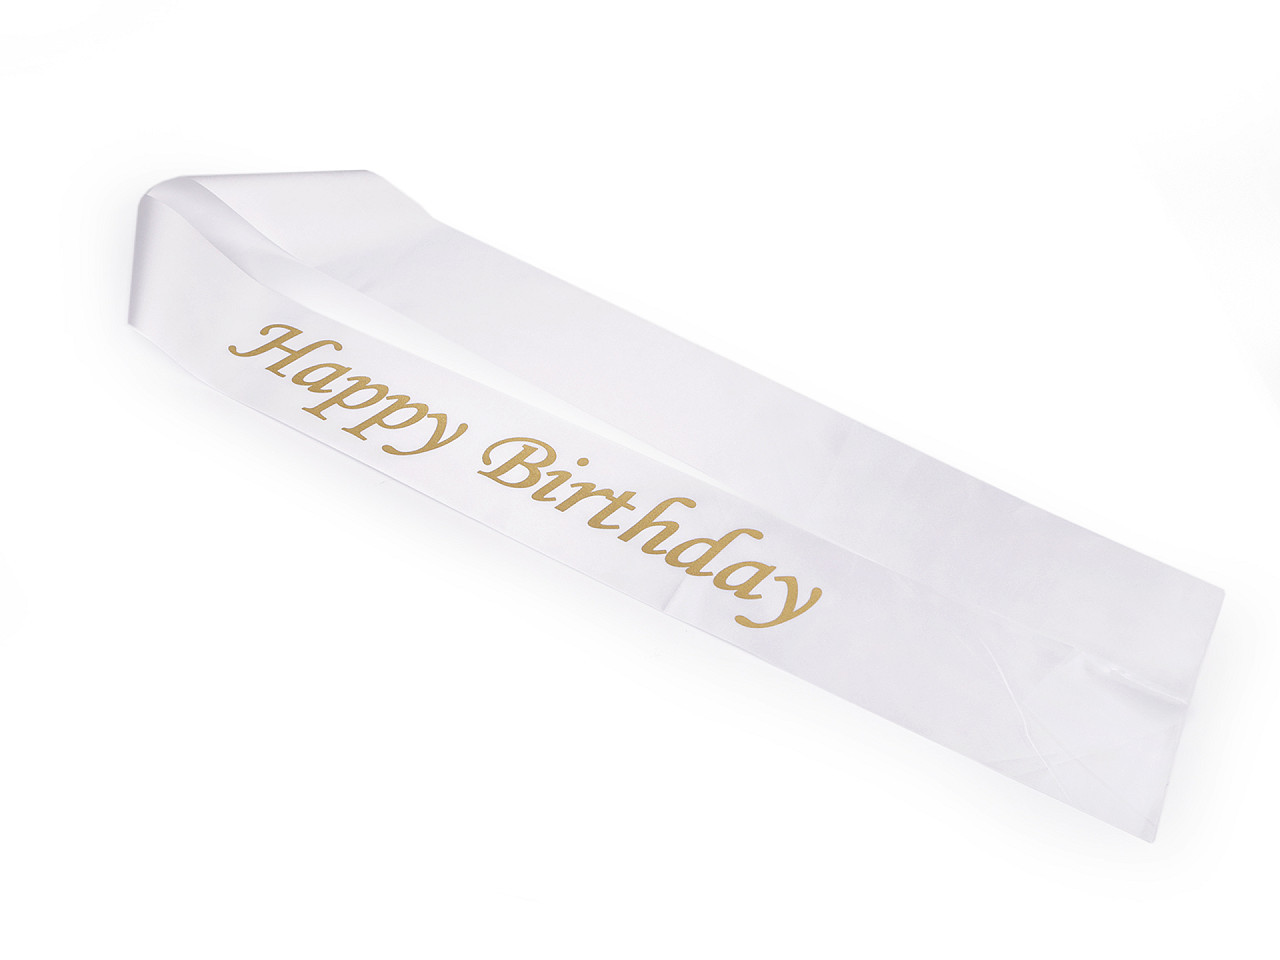 Narozeninová saténová šerpa Happy Birthday šíře 9,5 cm, barva 1 bílá zlatá